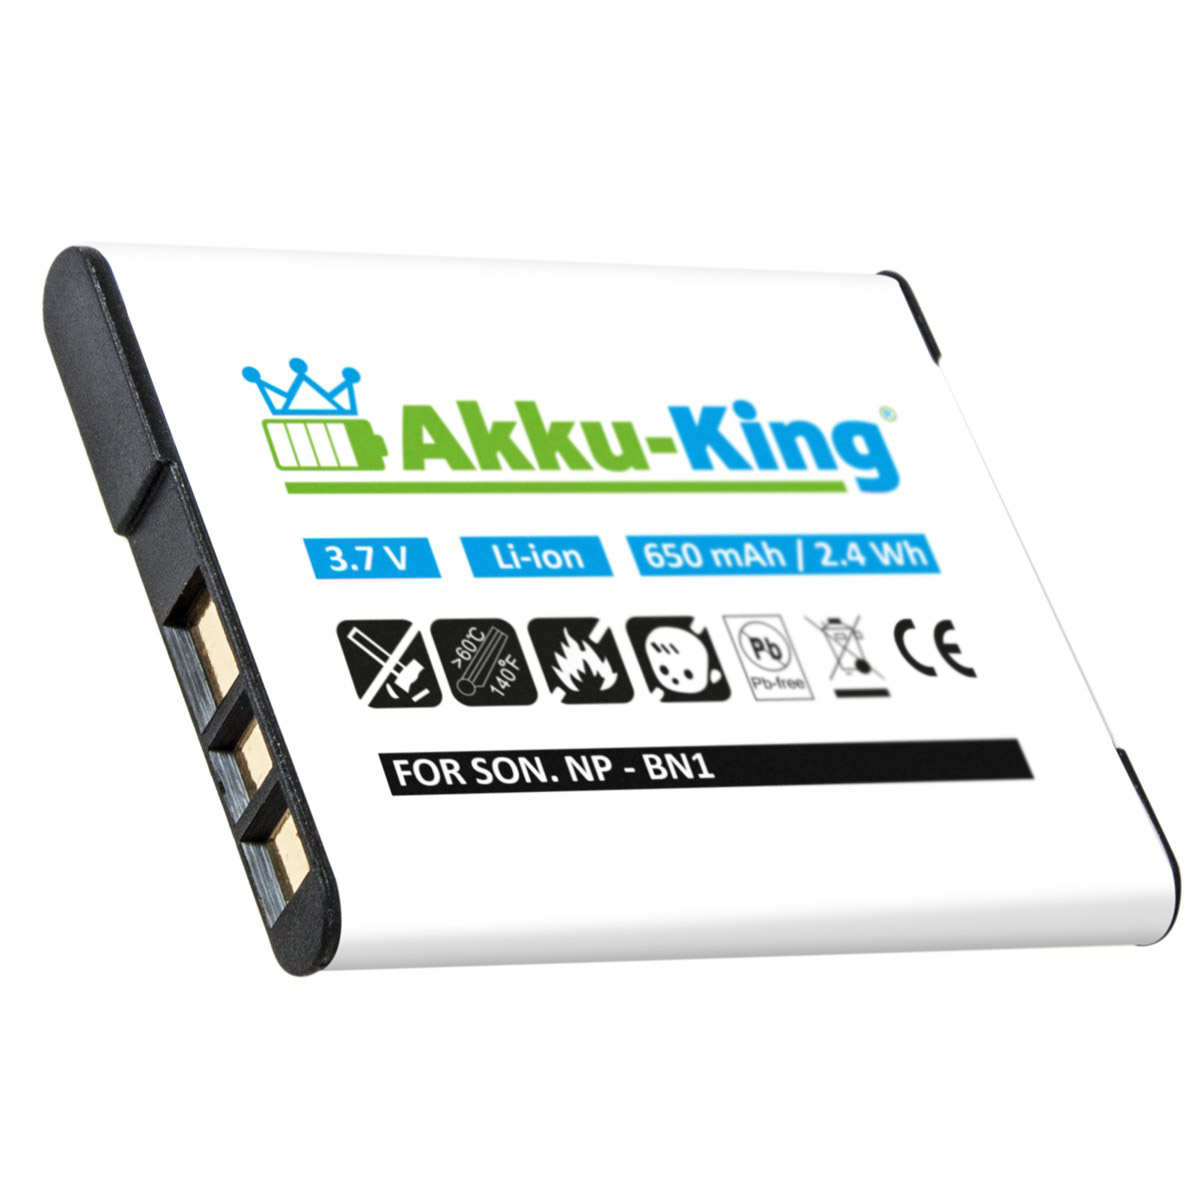 Li-Ion mit Kamera-Akku, 650mAh Sony Akku NP-BN1 AKKU-KING kompatibel Volt, 3.7